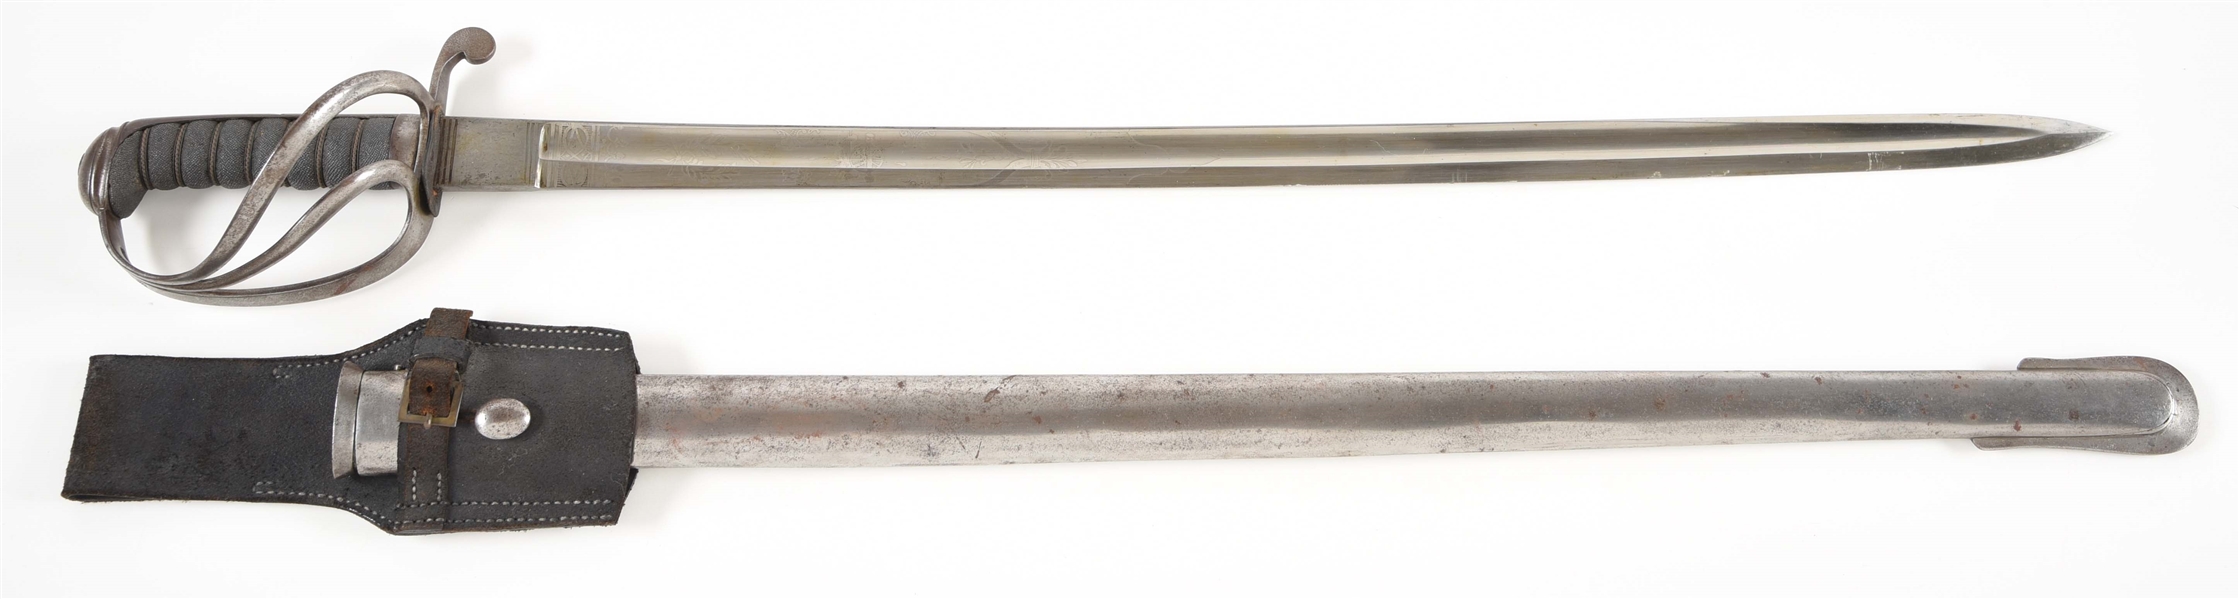 BRITISH PATTERN 1821 ARTILLERY SHORT SWORD UNIT MARKED TO THE SUSSEX VOLUNTEER 1ST ARTILLERY.